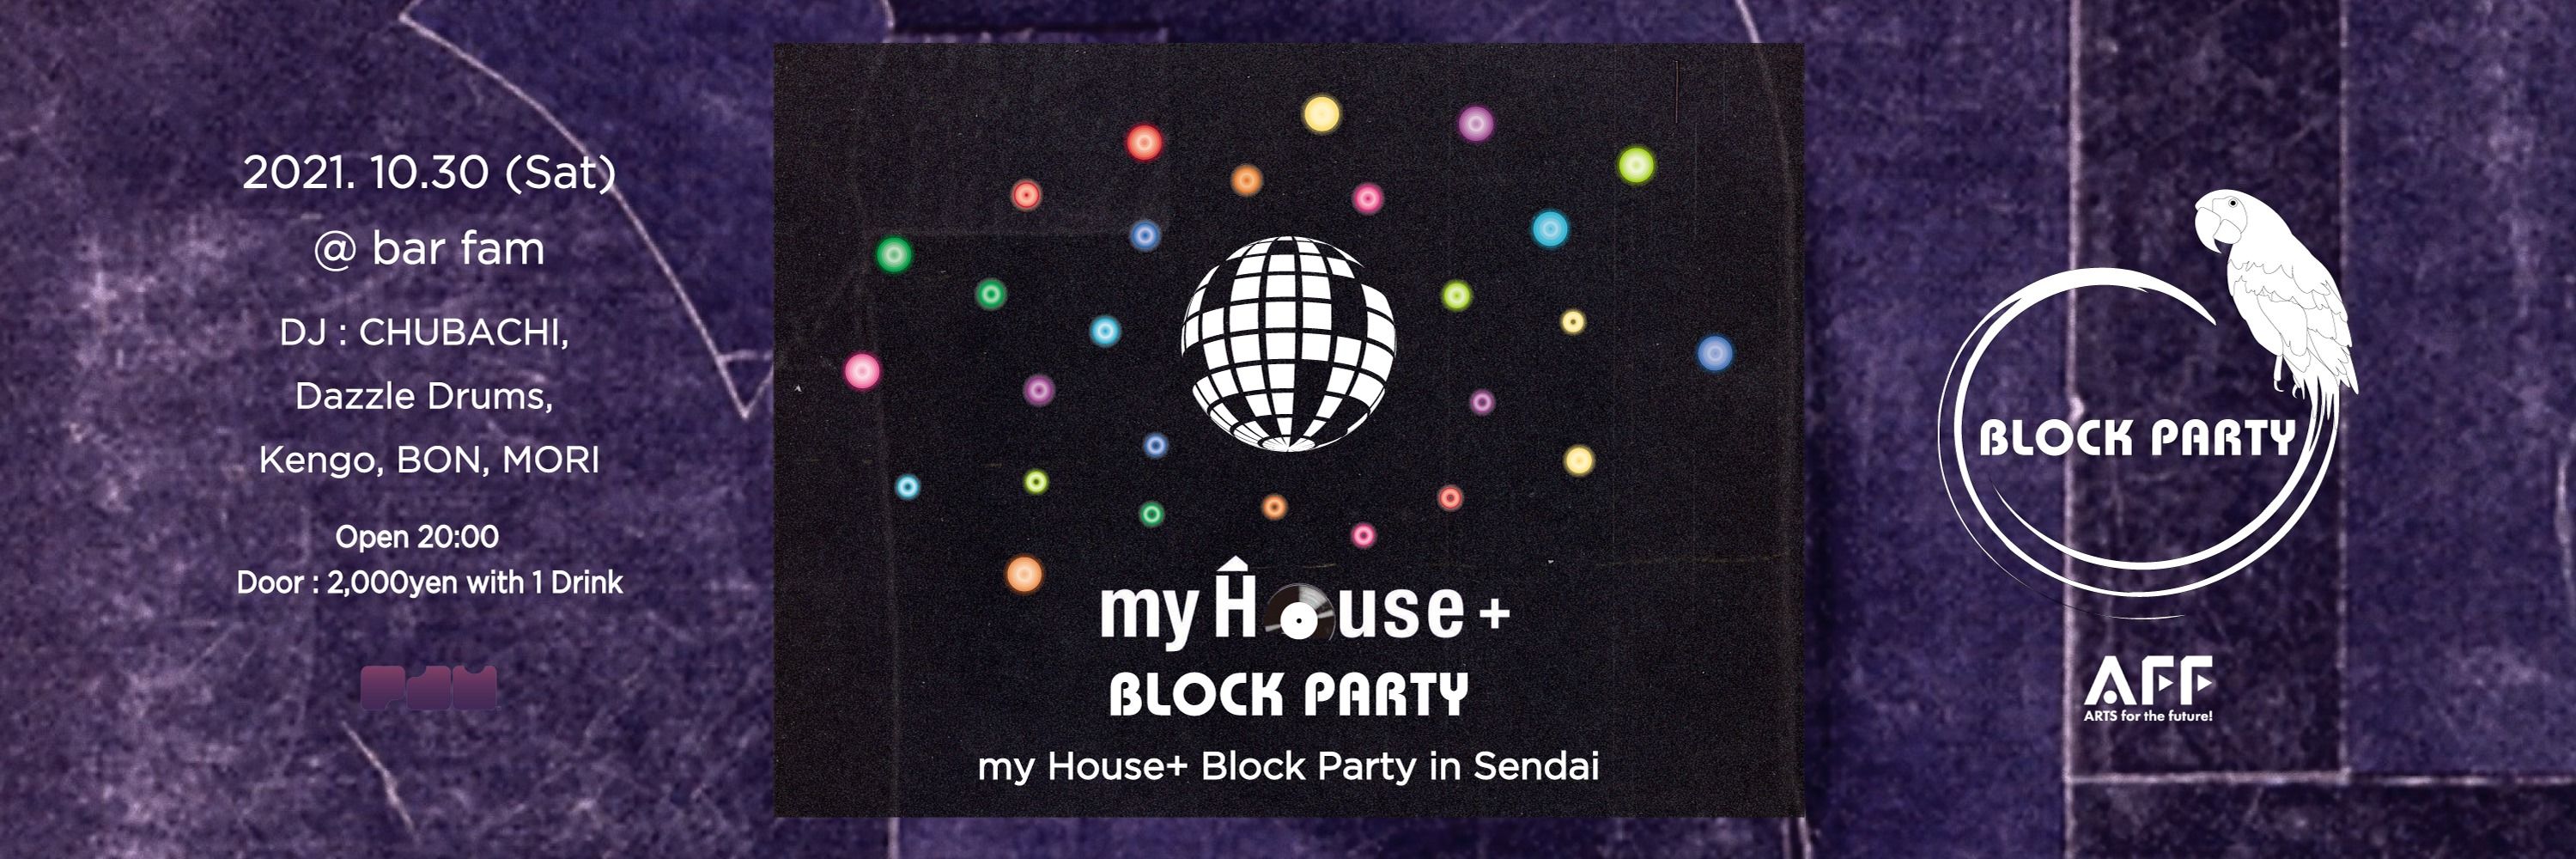  my House＋ Block Party @ bar fam Sendai